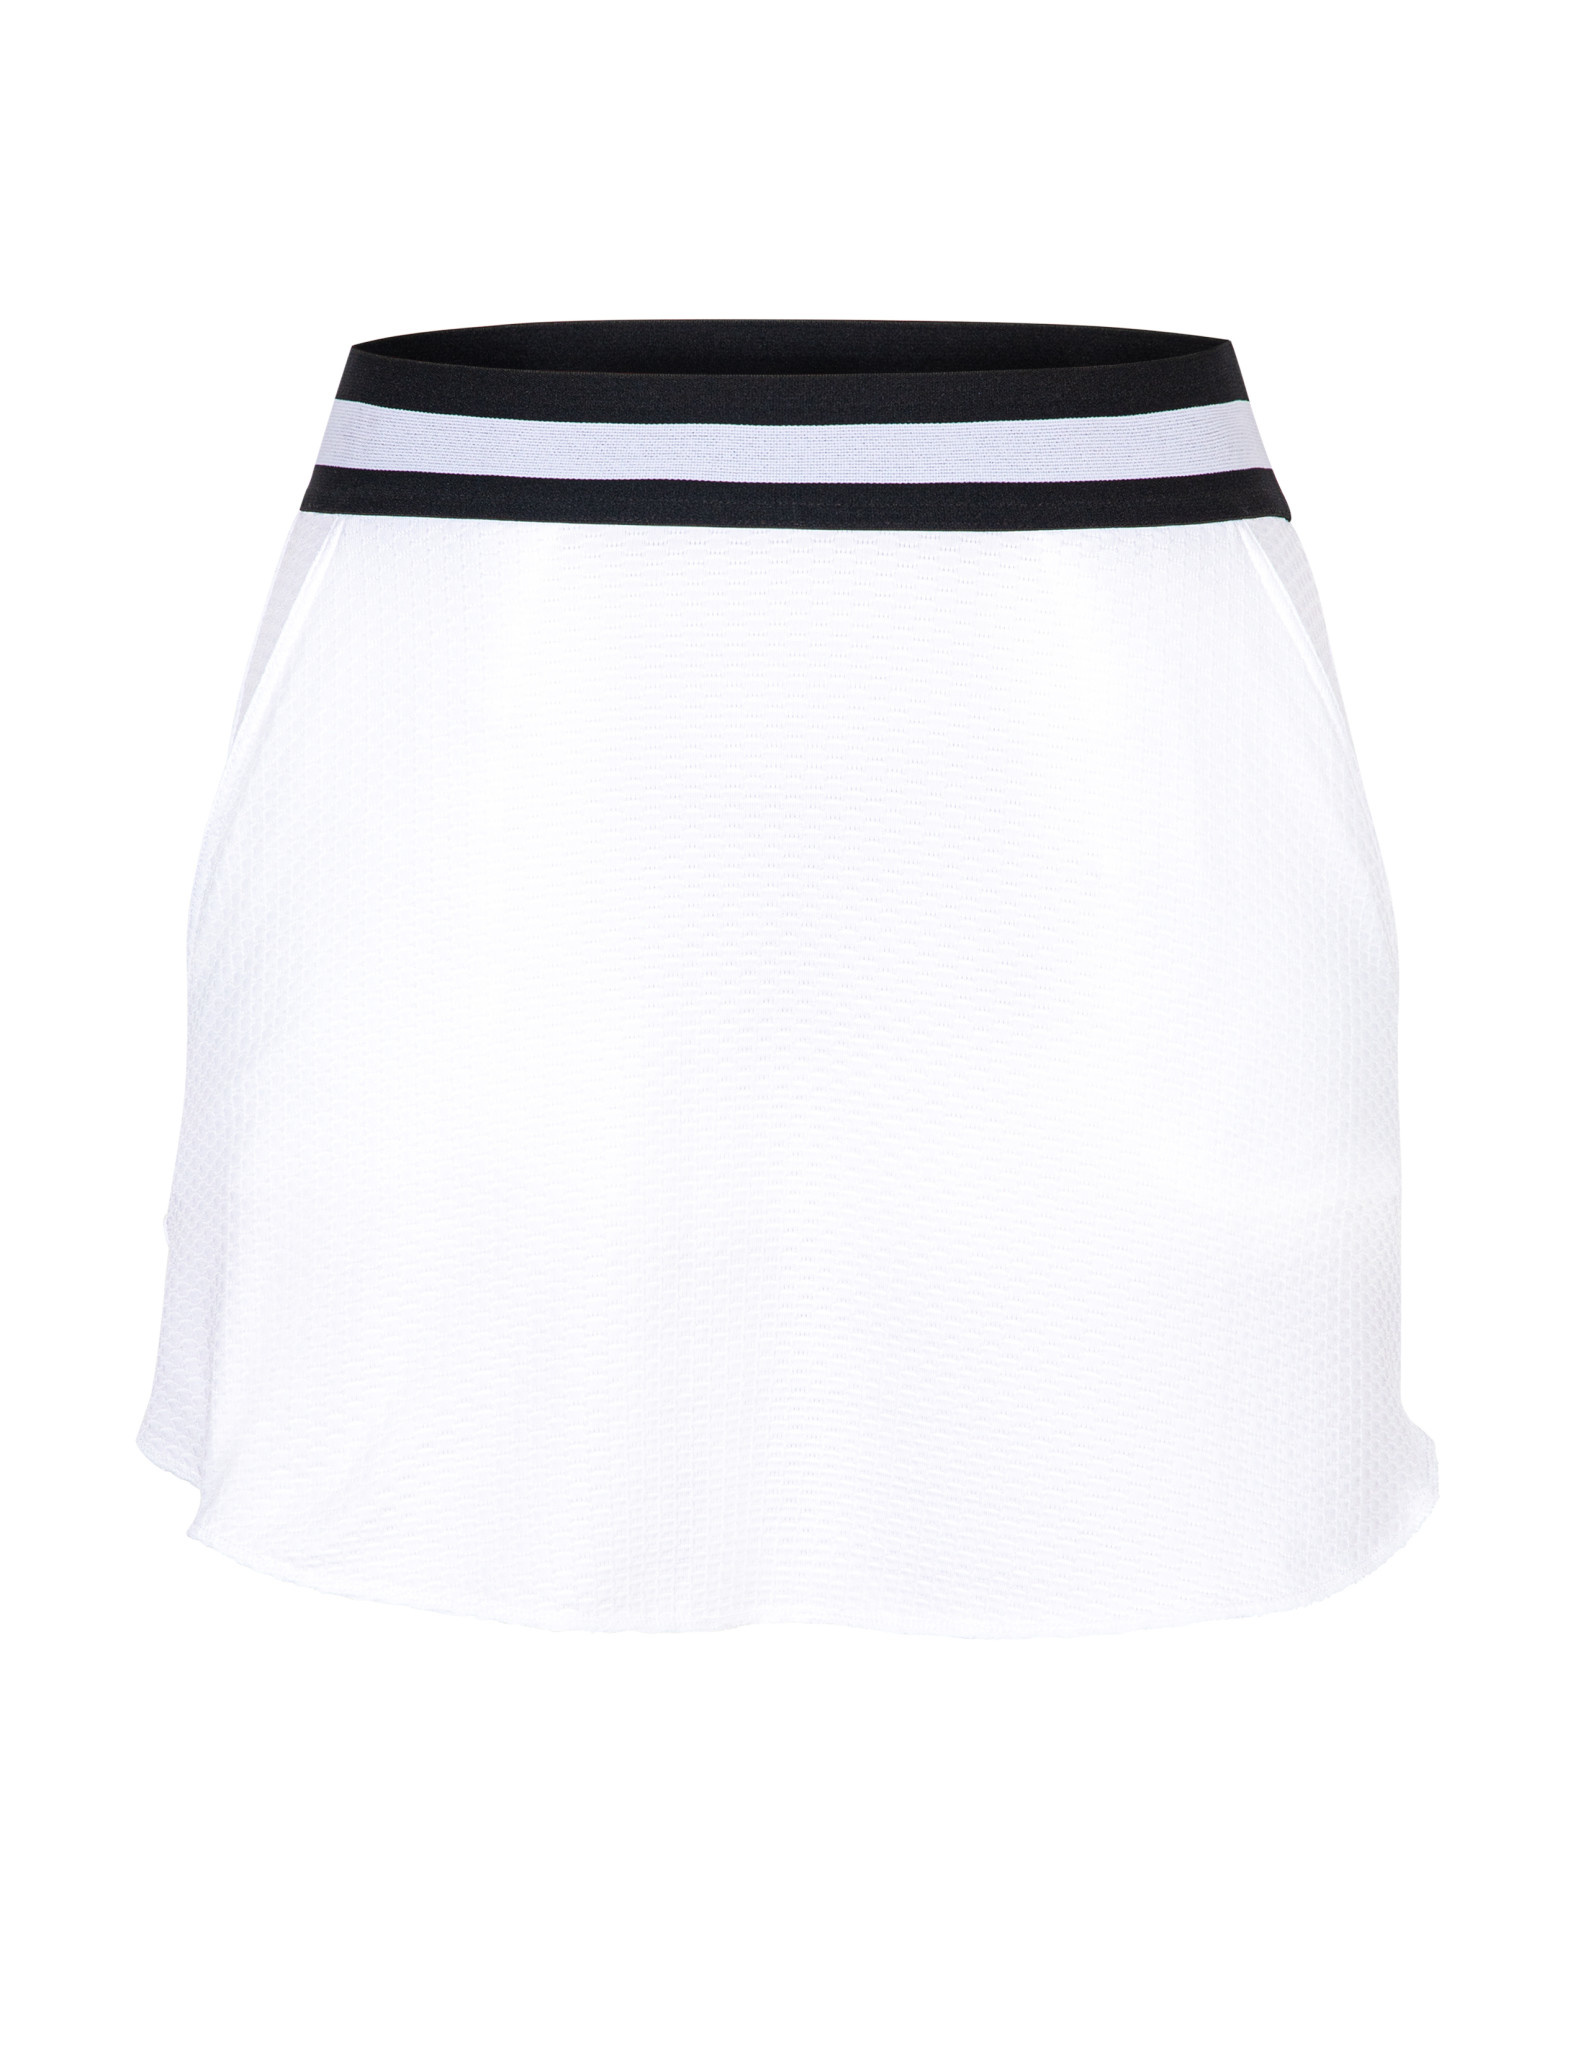 white chalk skirt